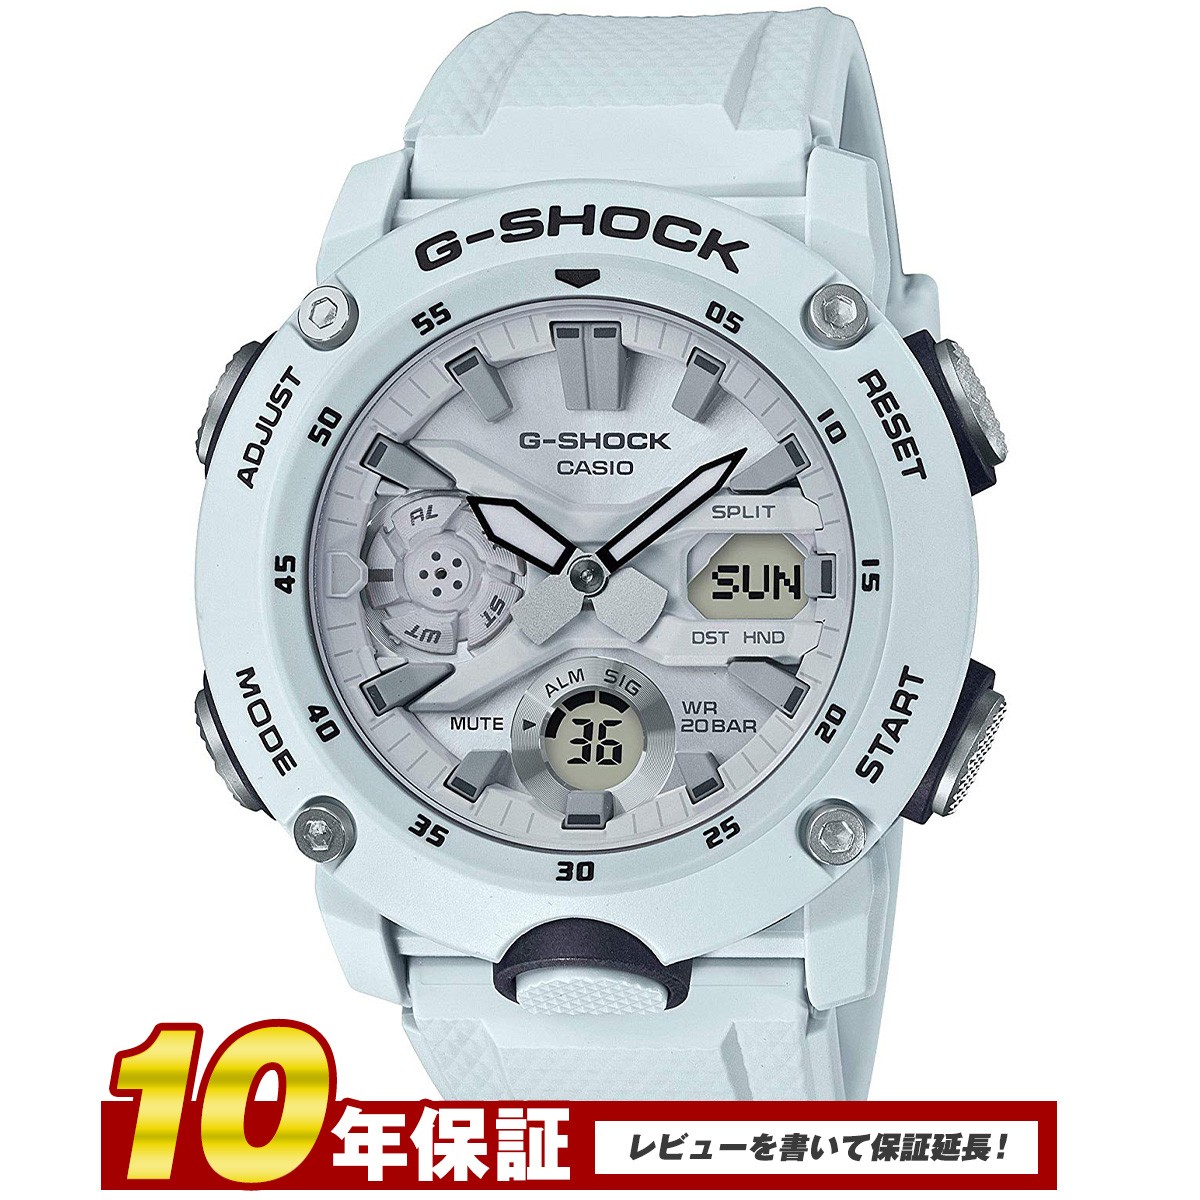 CASIO G-SHOCK BASIC カーボンコアガード 海外モデル GA-2000S-7A G-SHOCK G-SHOCK BASIC メンズウォッチの商品画像